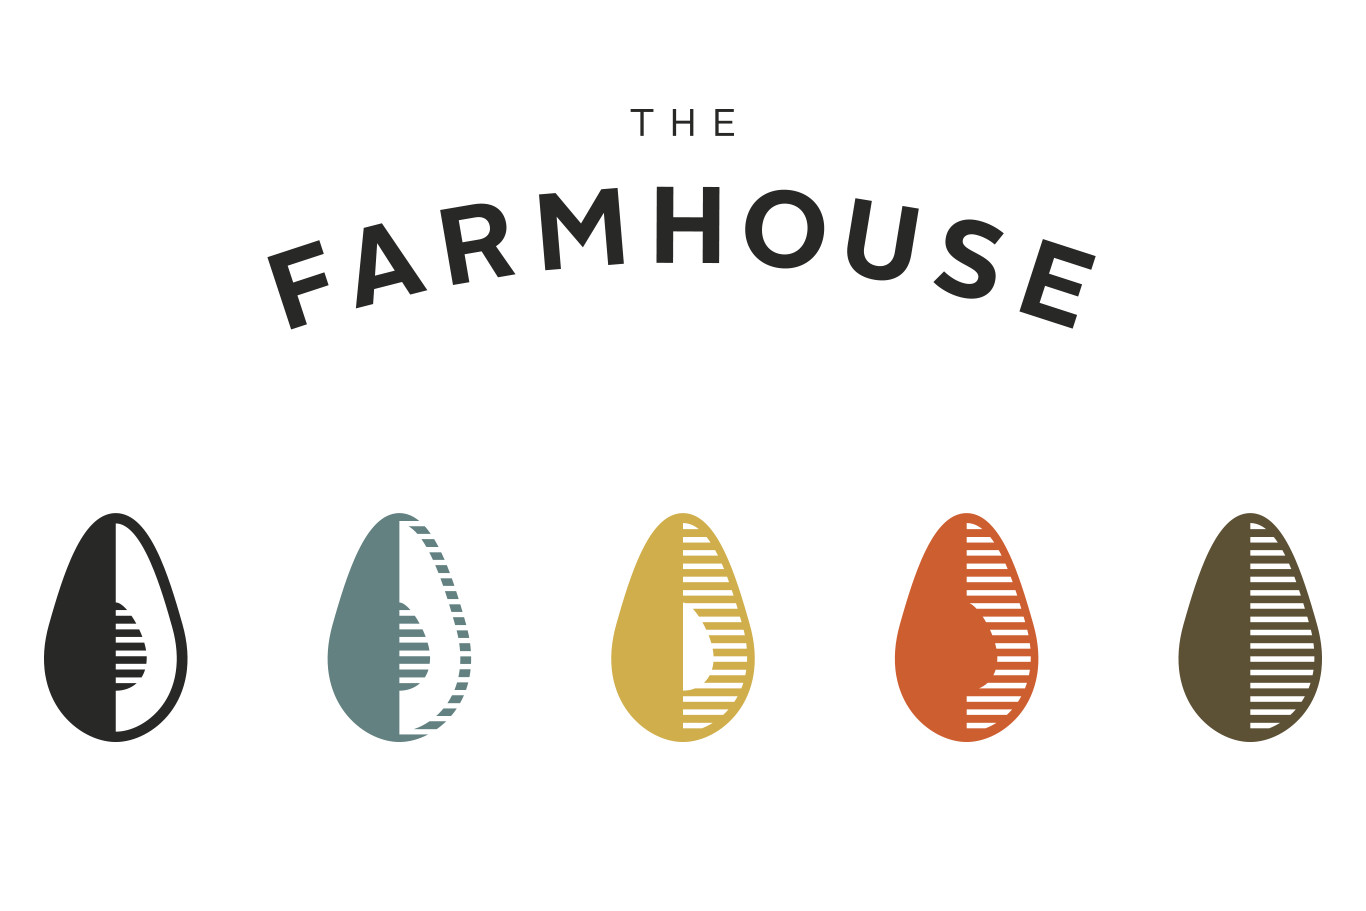 Farmhouse Logomarks